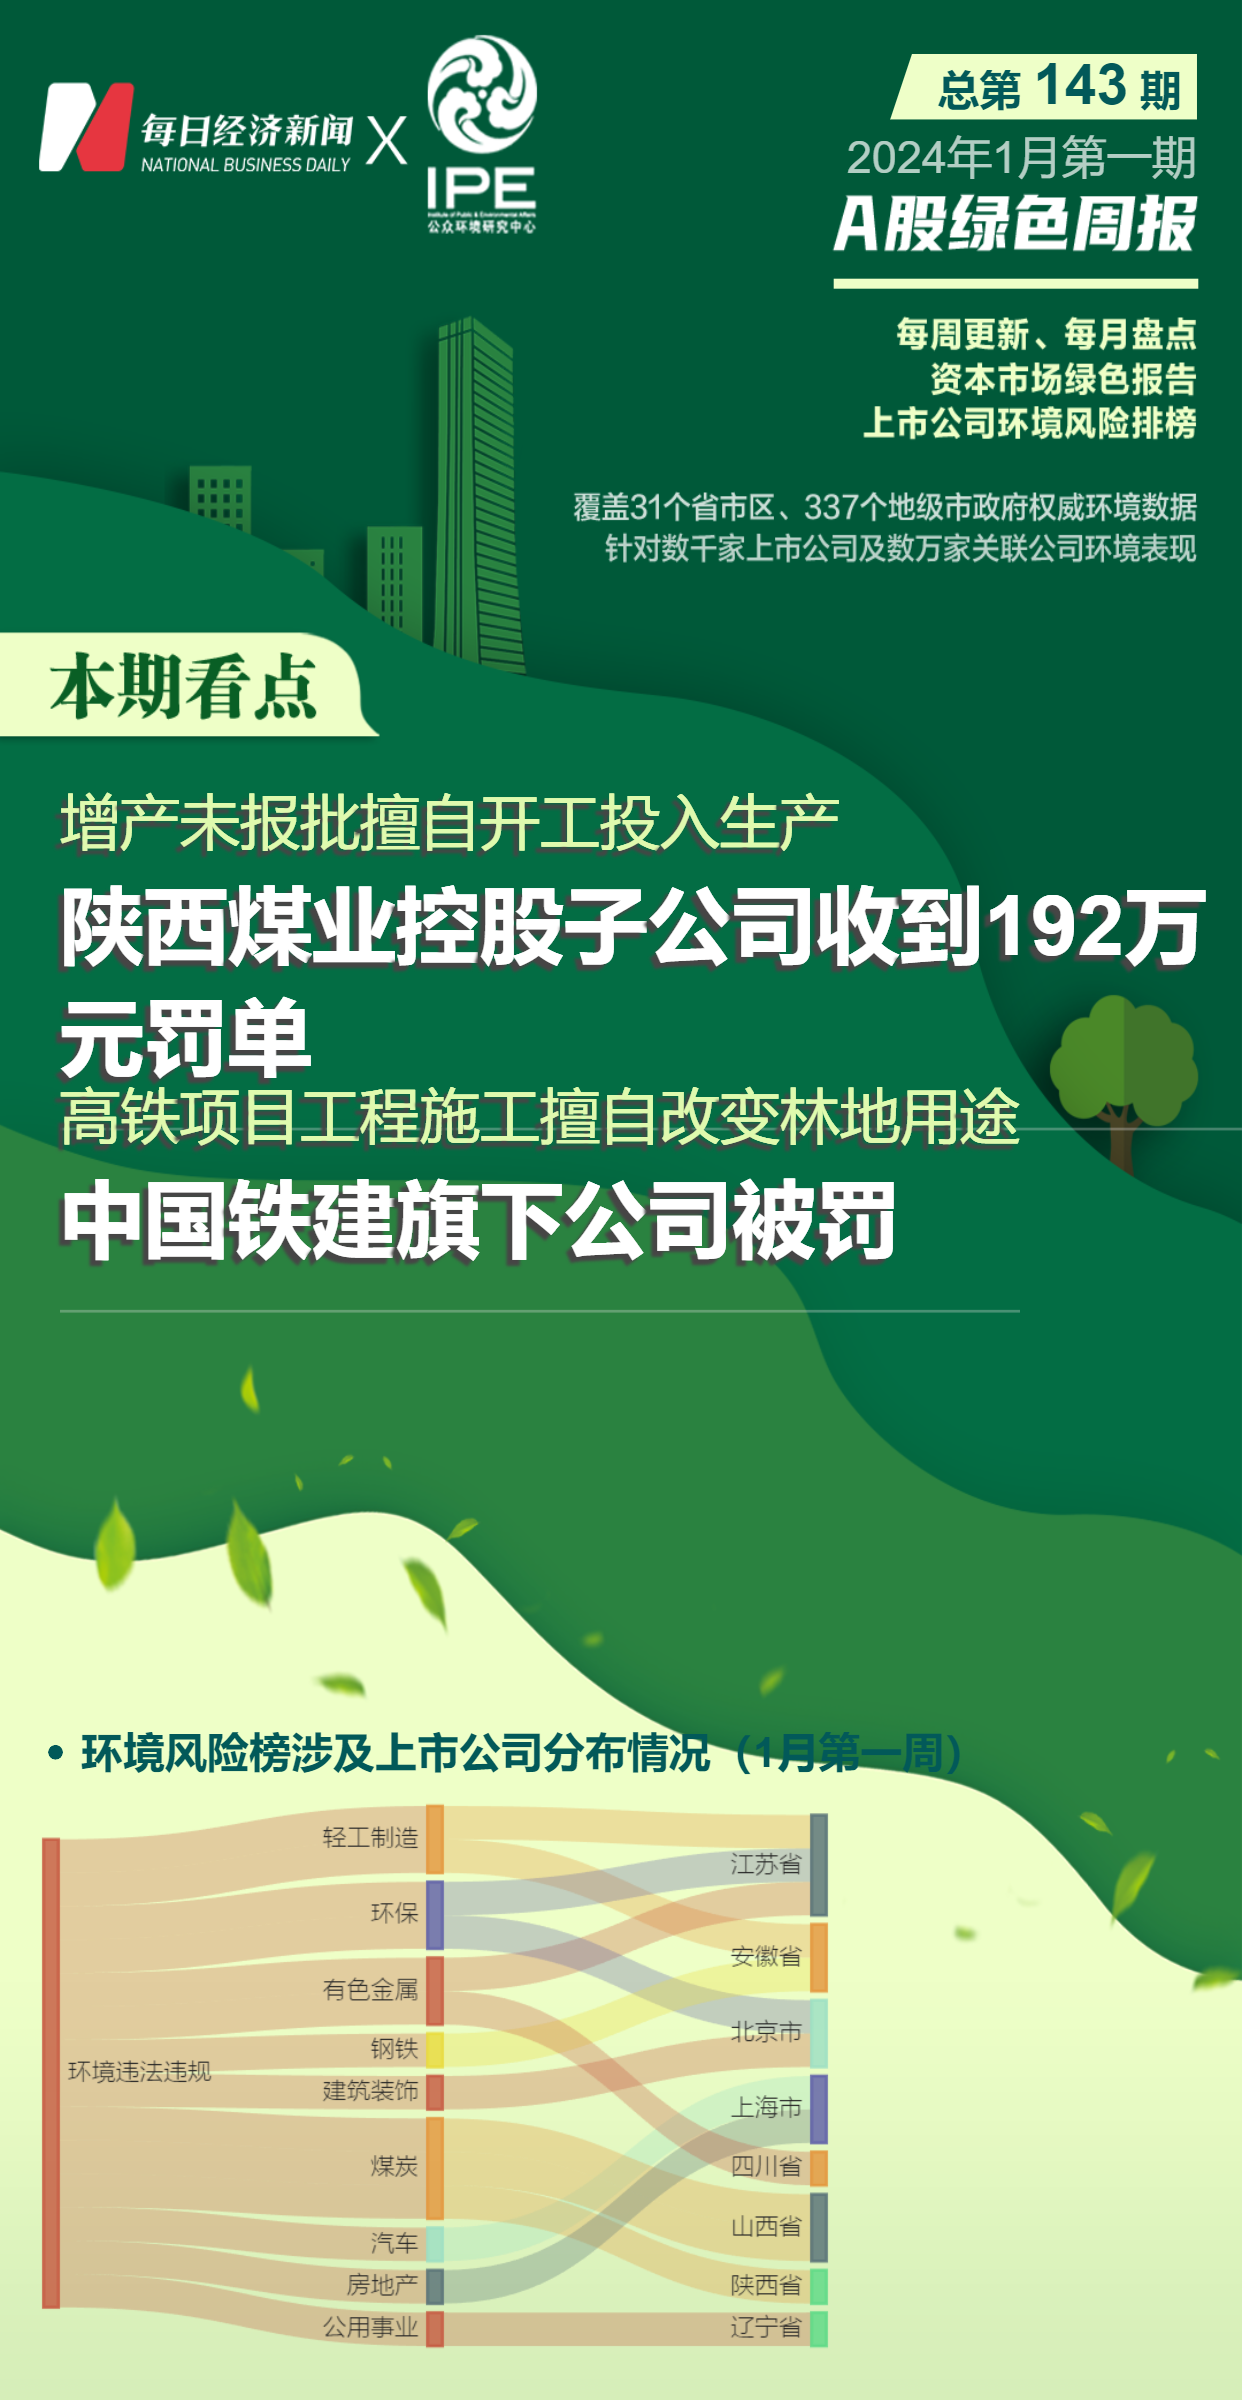 乐鱼登录A股绿色周报｜14家上市公司暴露环境风险 陕西煤业控股公司被罚192万元(图1)